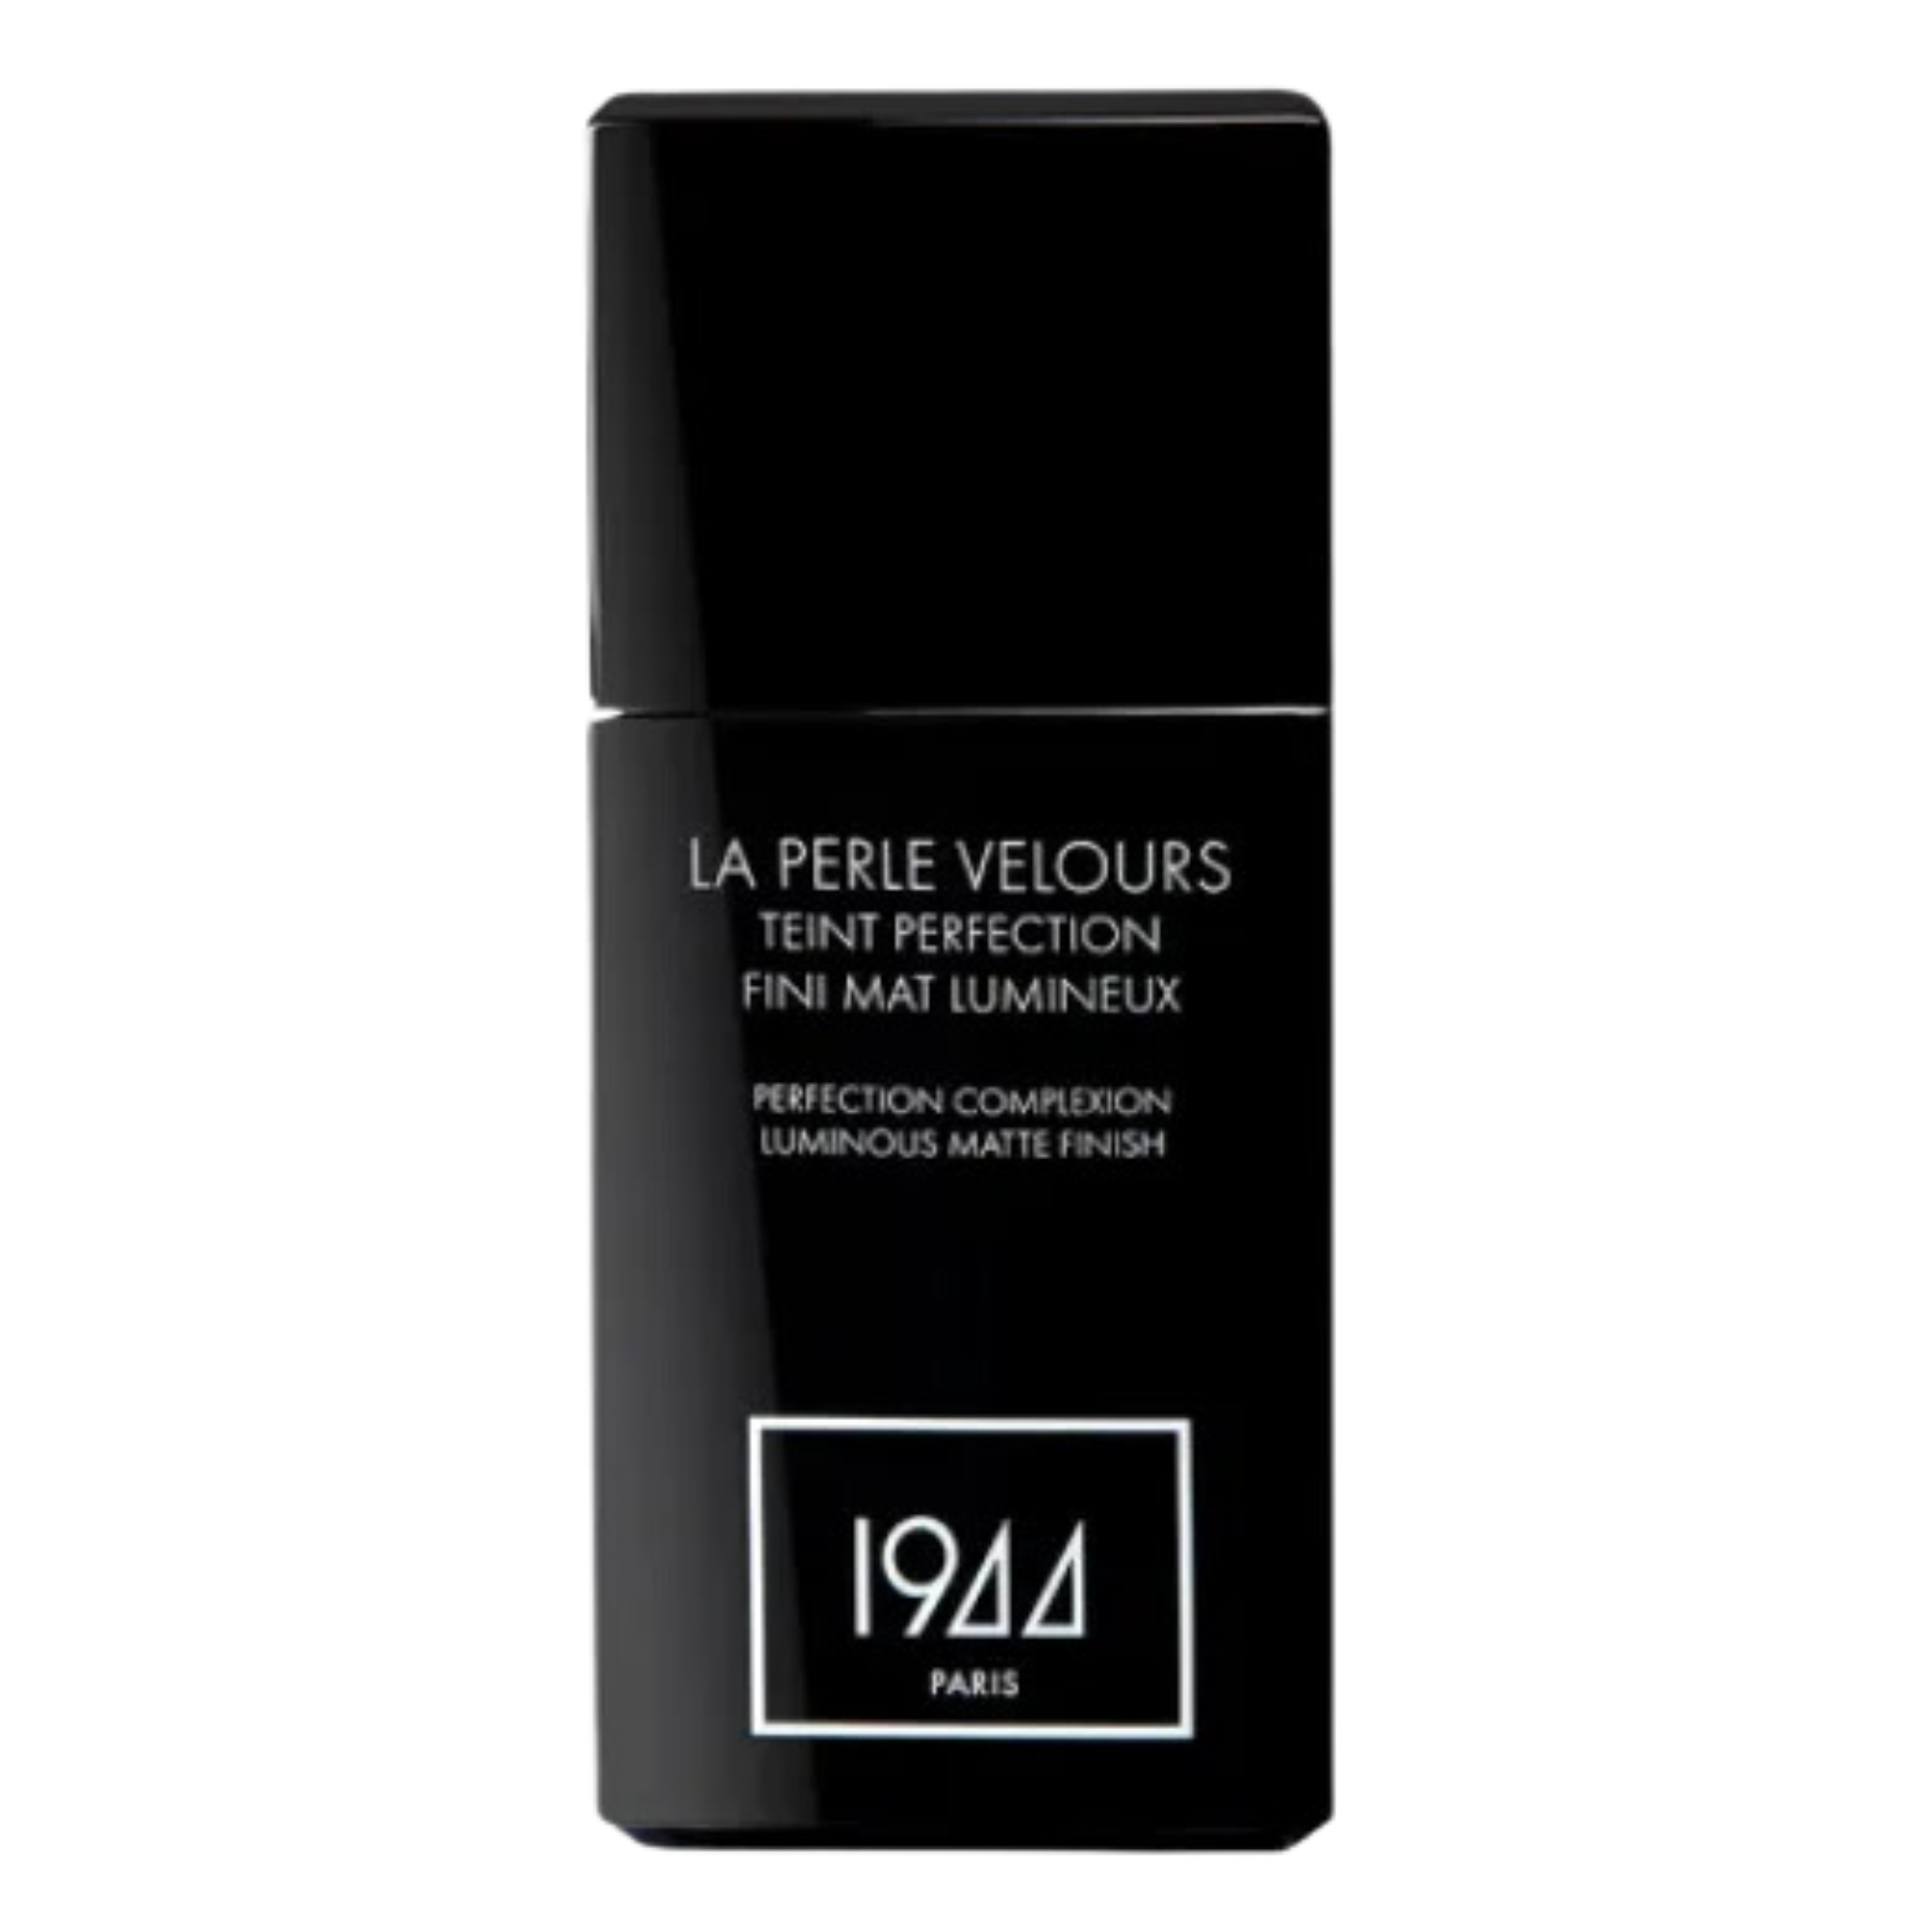 Тональный крем для лица ft205 соболь 1944 Paris La Perle Velours, 30 мл